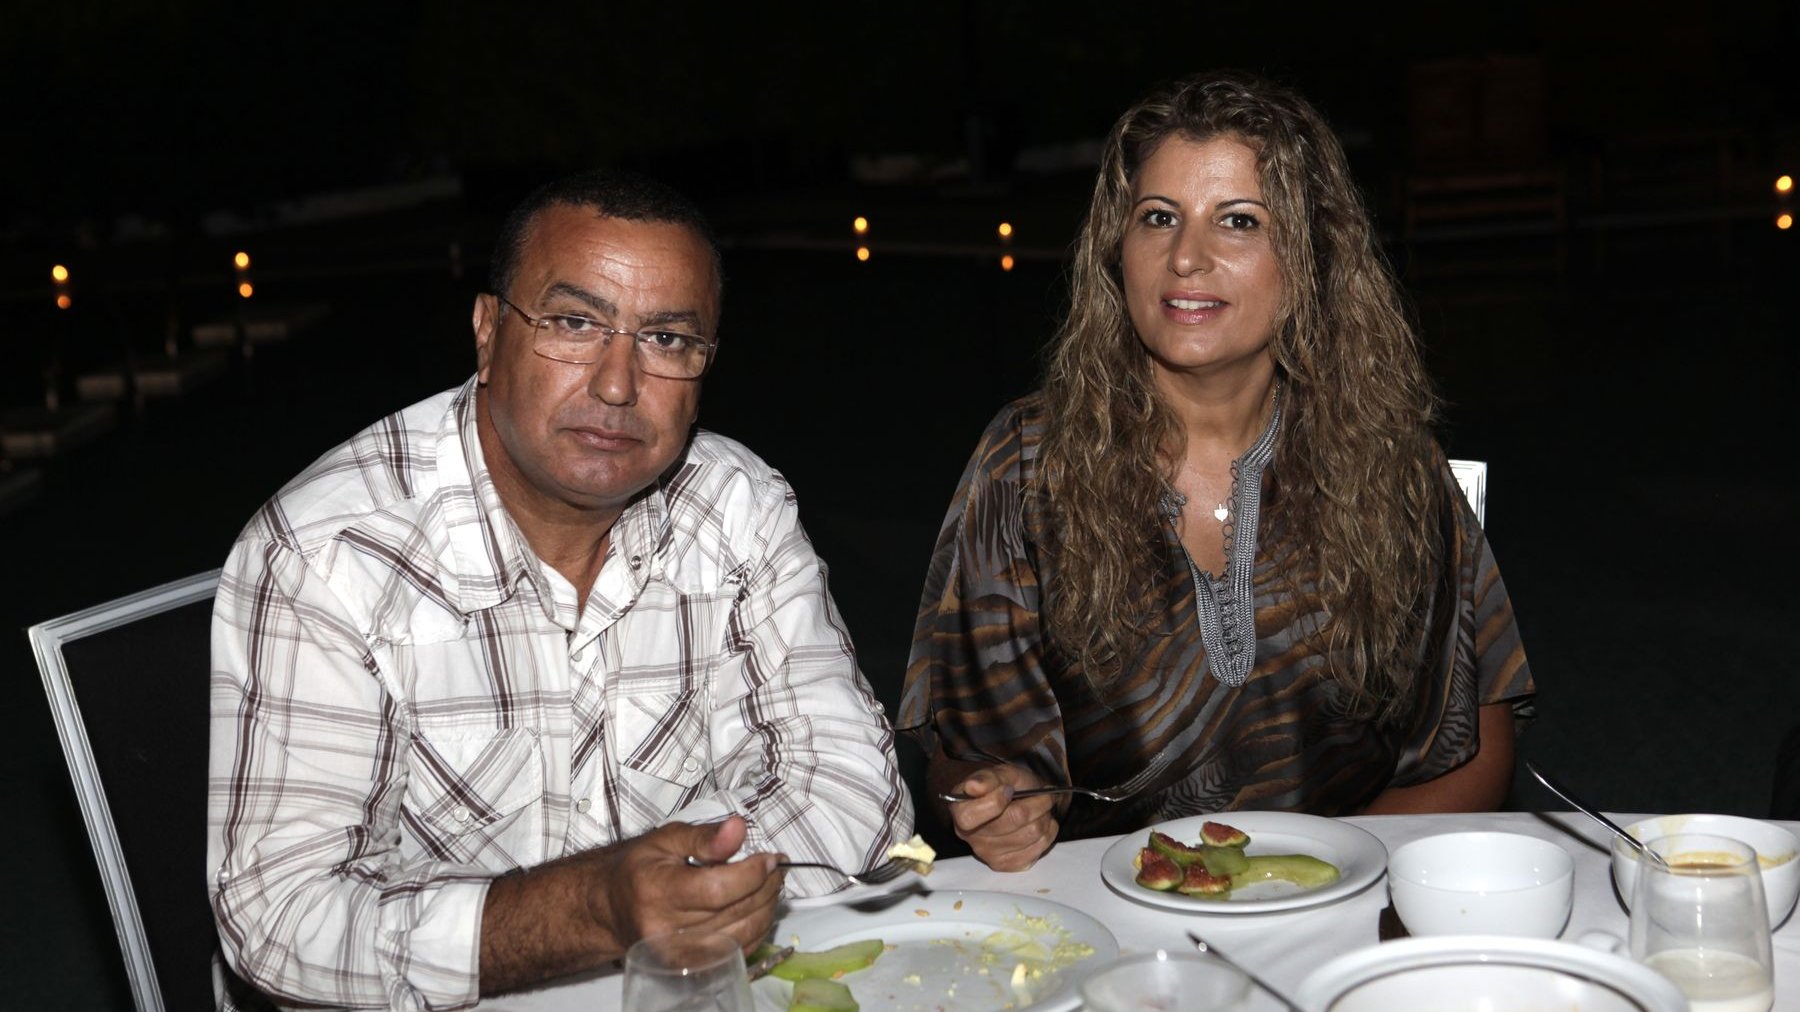 Les parents du grand pilote automobile Mehdi Bennani, premier pilote automobile marocain à avoir rejoint le Championnat du monde des voitures de tourisme, sont venus ensemble.
